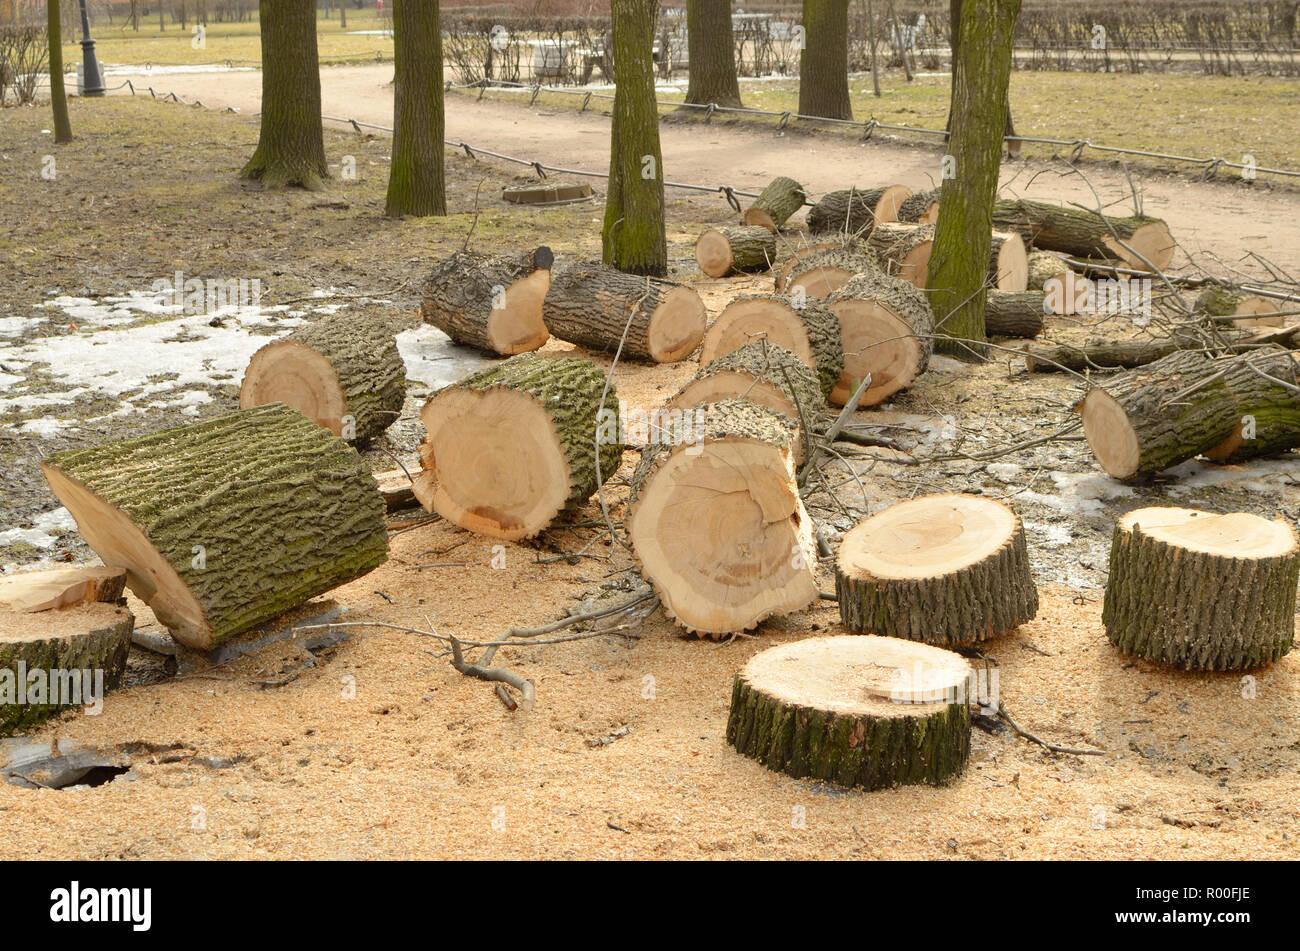 La pulizia del parco.vecchi alberi sono tagliati verso il basso.Essi li tagliano in grumi. Foto Stock